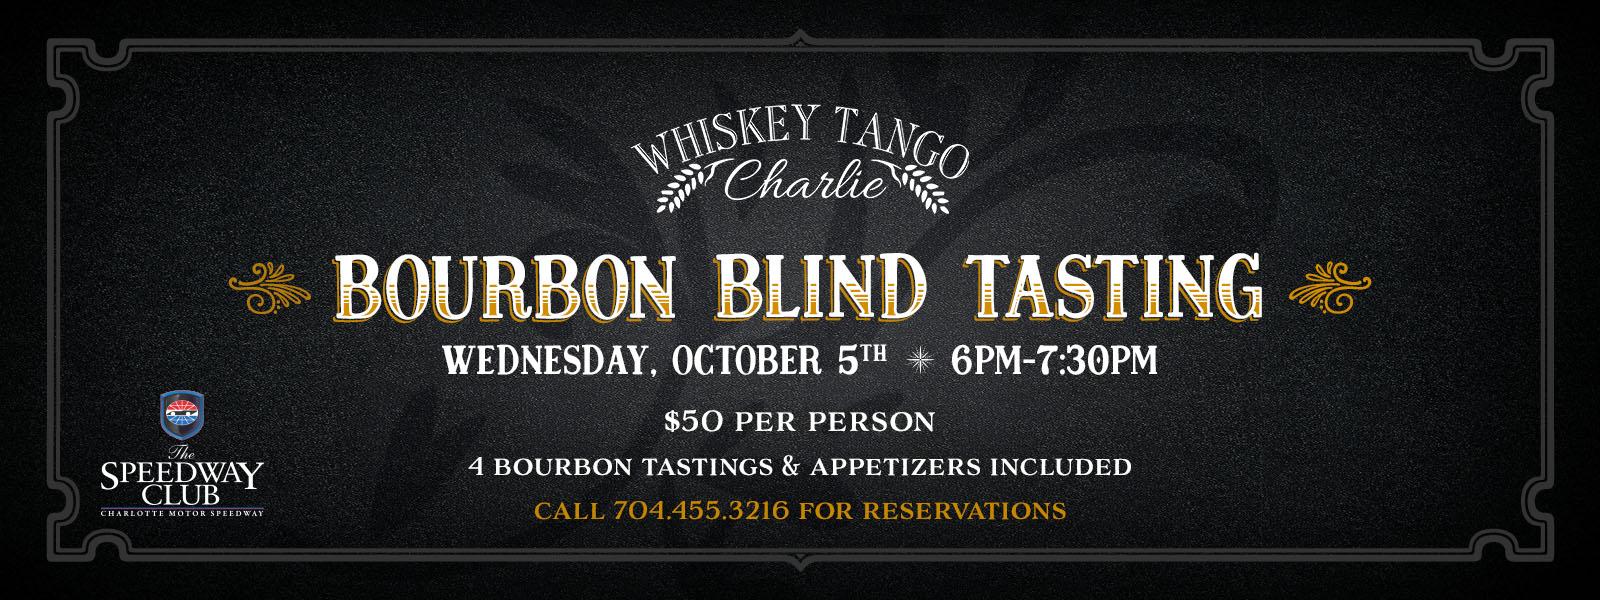 Bourbon Blind Tasting